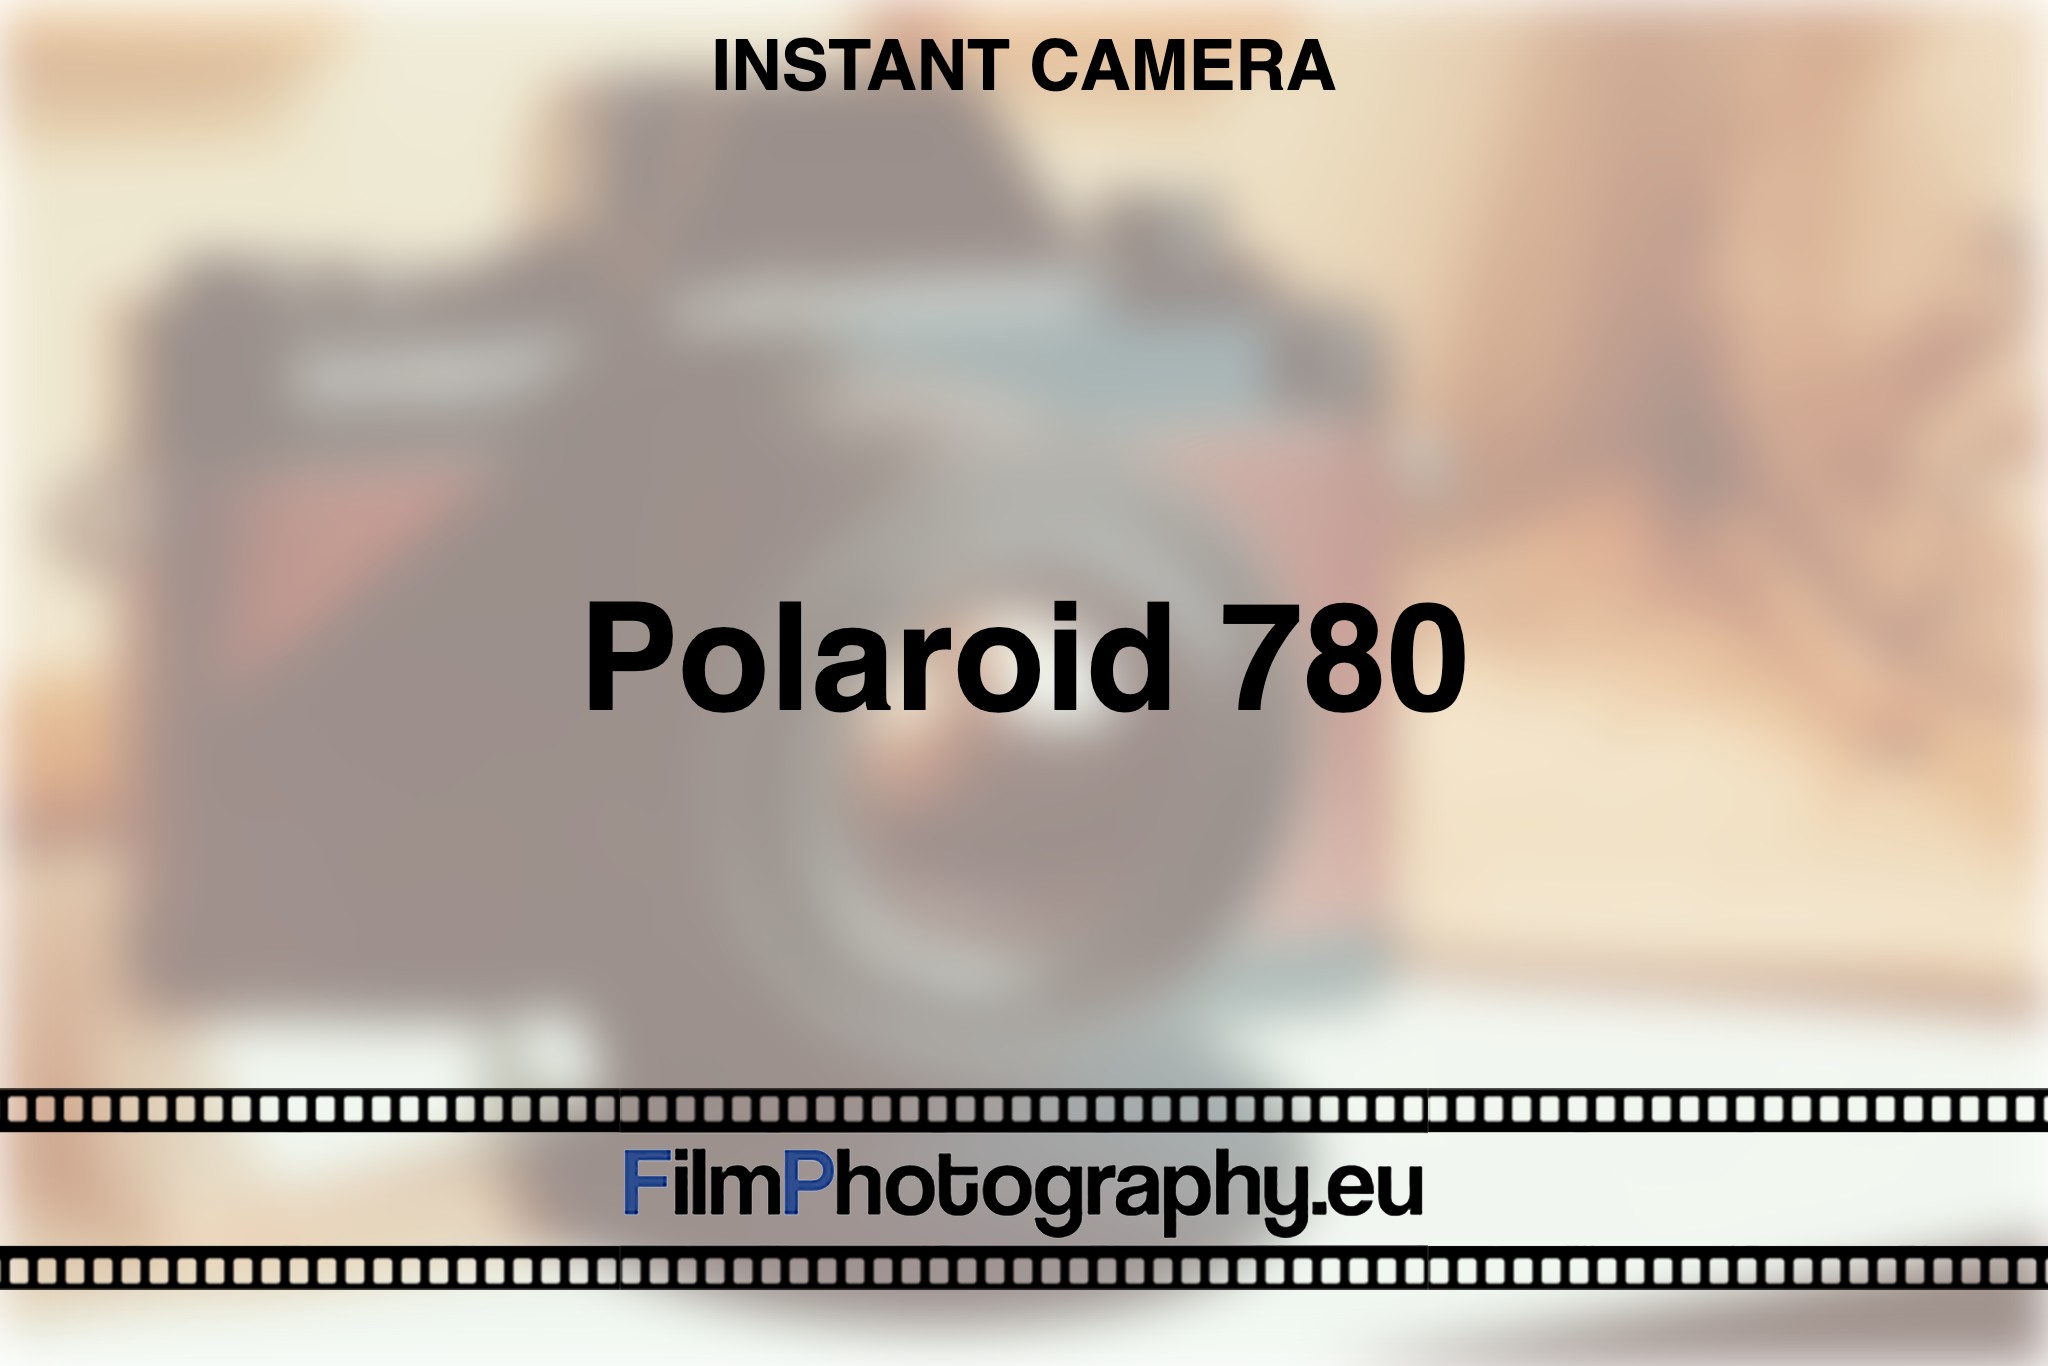 polaroid-780-instant-camera-bnv